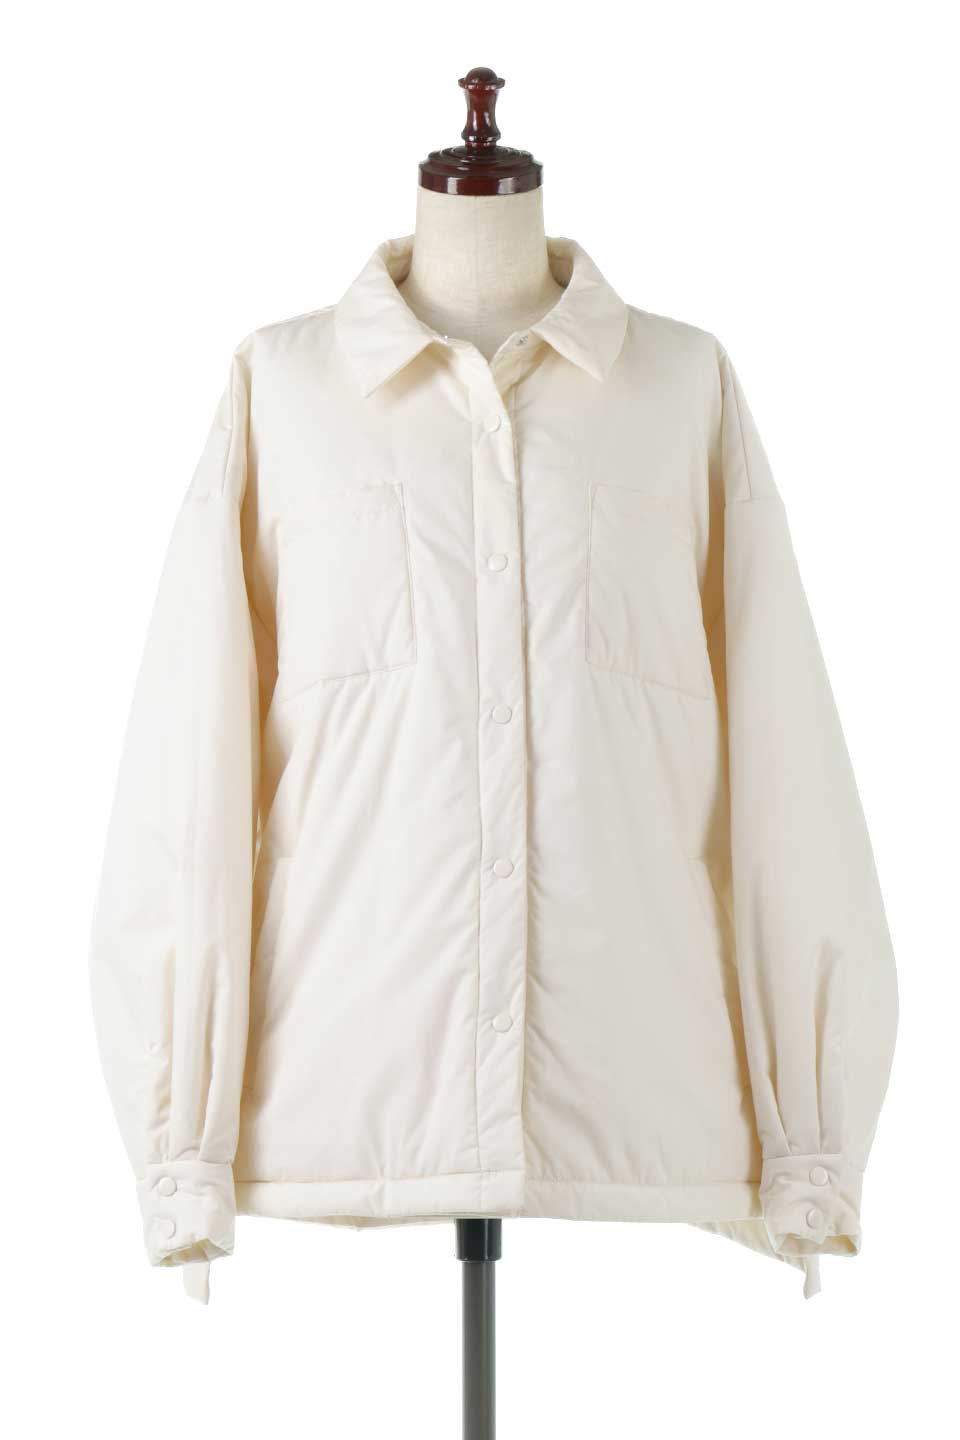 OverSizedPufferShirtsJacketビッグシルエット・中綿シャツジャケット大人カジュアルに最適な海外ファッションのothers（その他インポートアイテム）のアウターやジャケット。オーバーサイズのシャツジャケットに中綿を入れた暖かアイテム。ゆったりデザインなので厚手のニットを着ていてもキレイなシルエットになります。